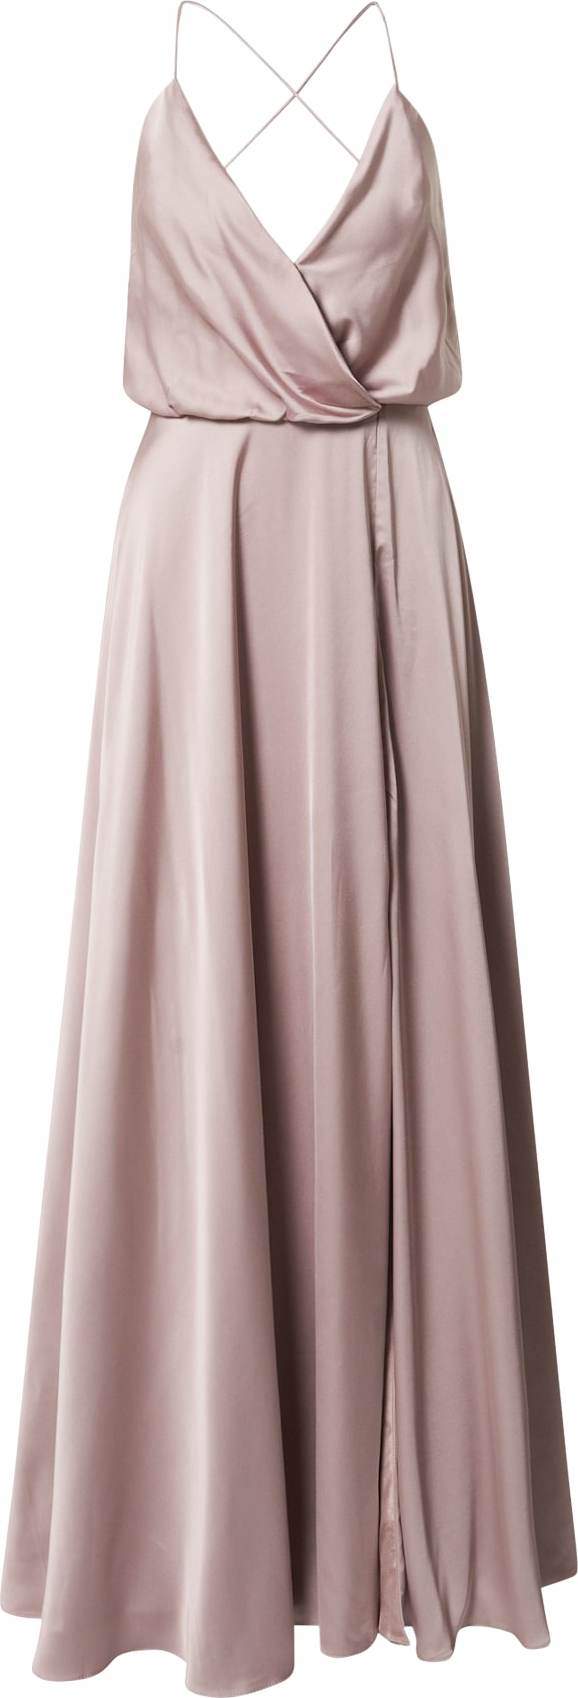 Unique Společenské šaty bledě fialová